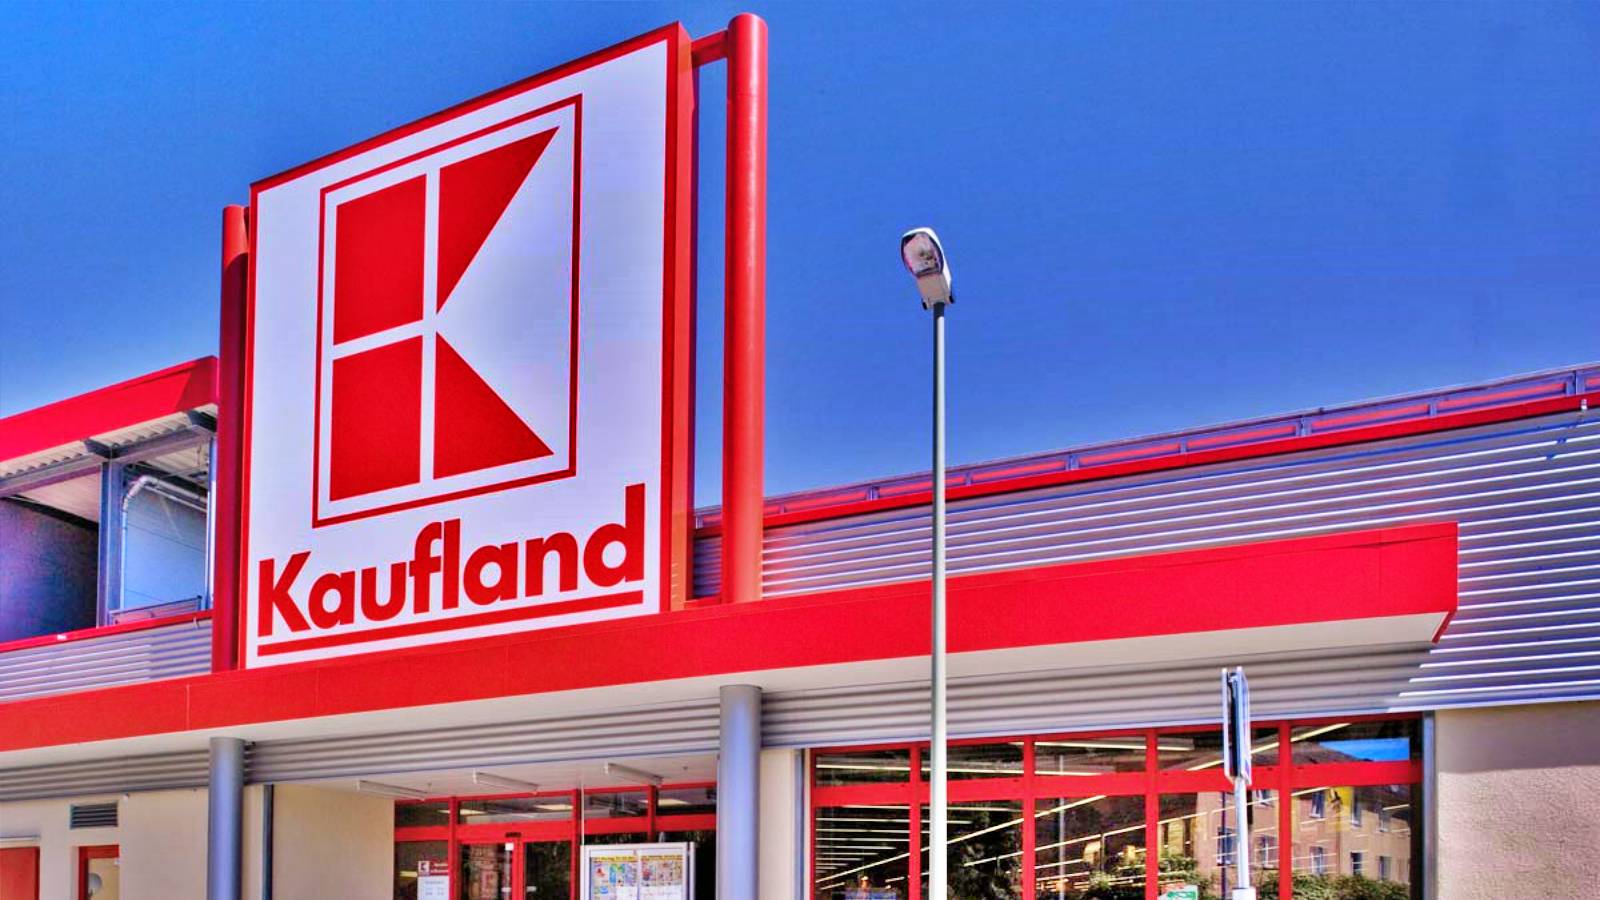 Niespodzianka Kaufland oferowana BEZPŁATNIE dla klientów w całej Rumunii